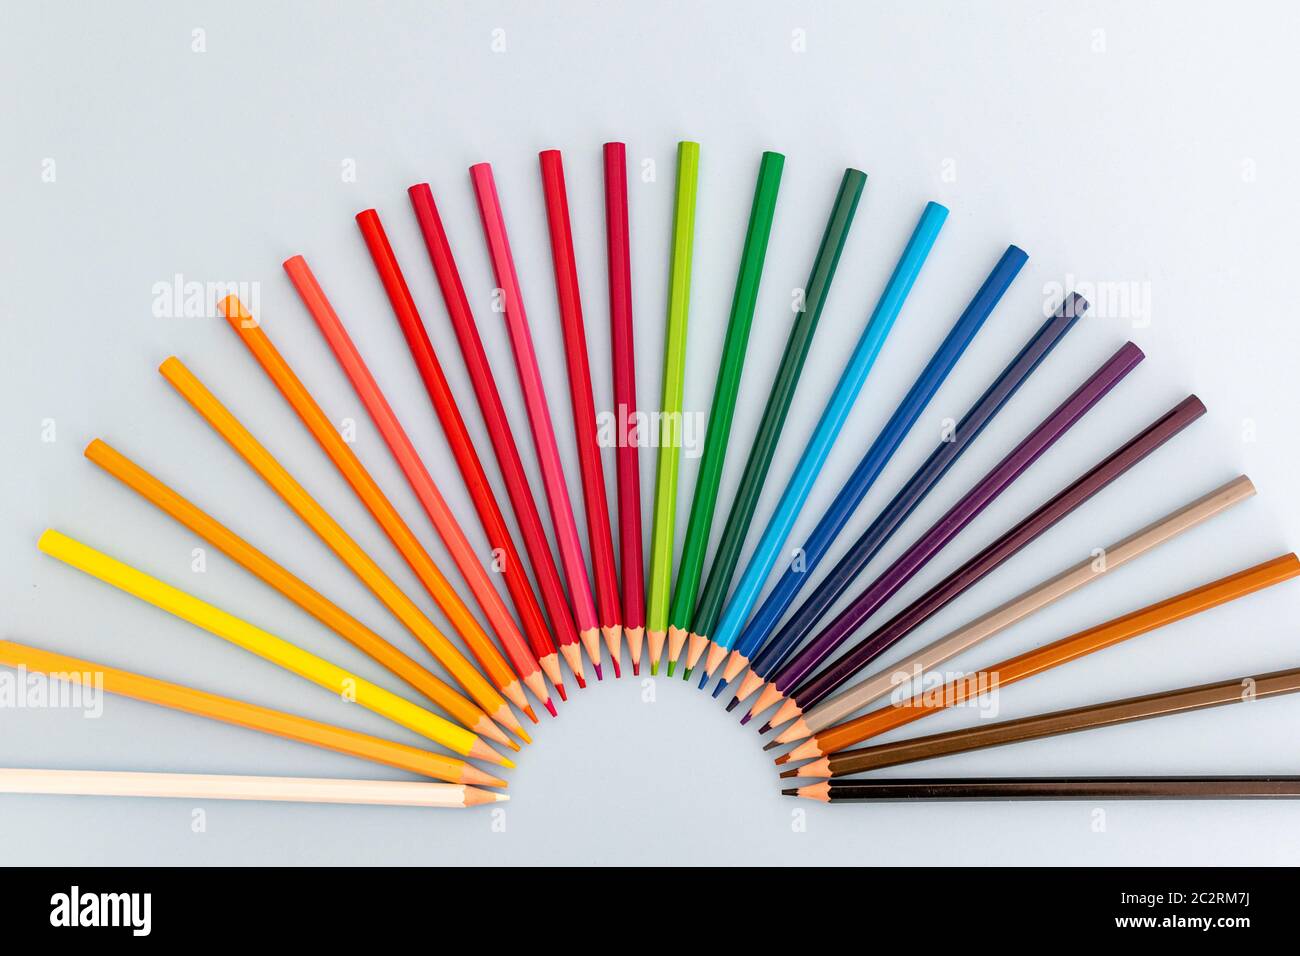 Ein Satz von bunten Bleistiften, die wie ein Regenbogen in einer Fächerform aufgereiht sind Stockfoto